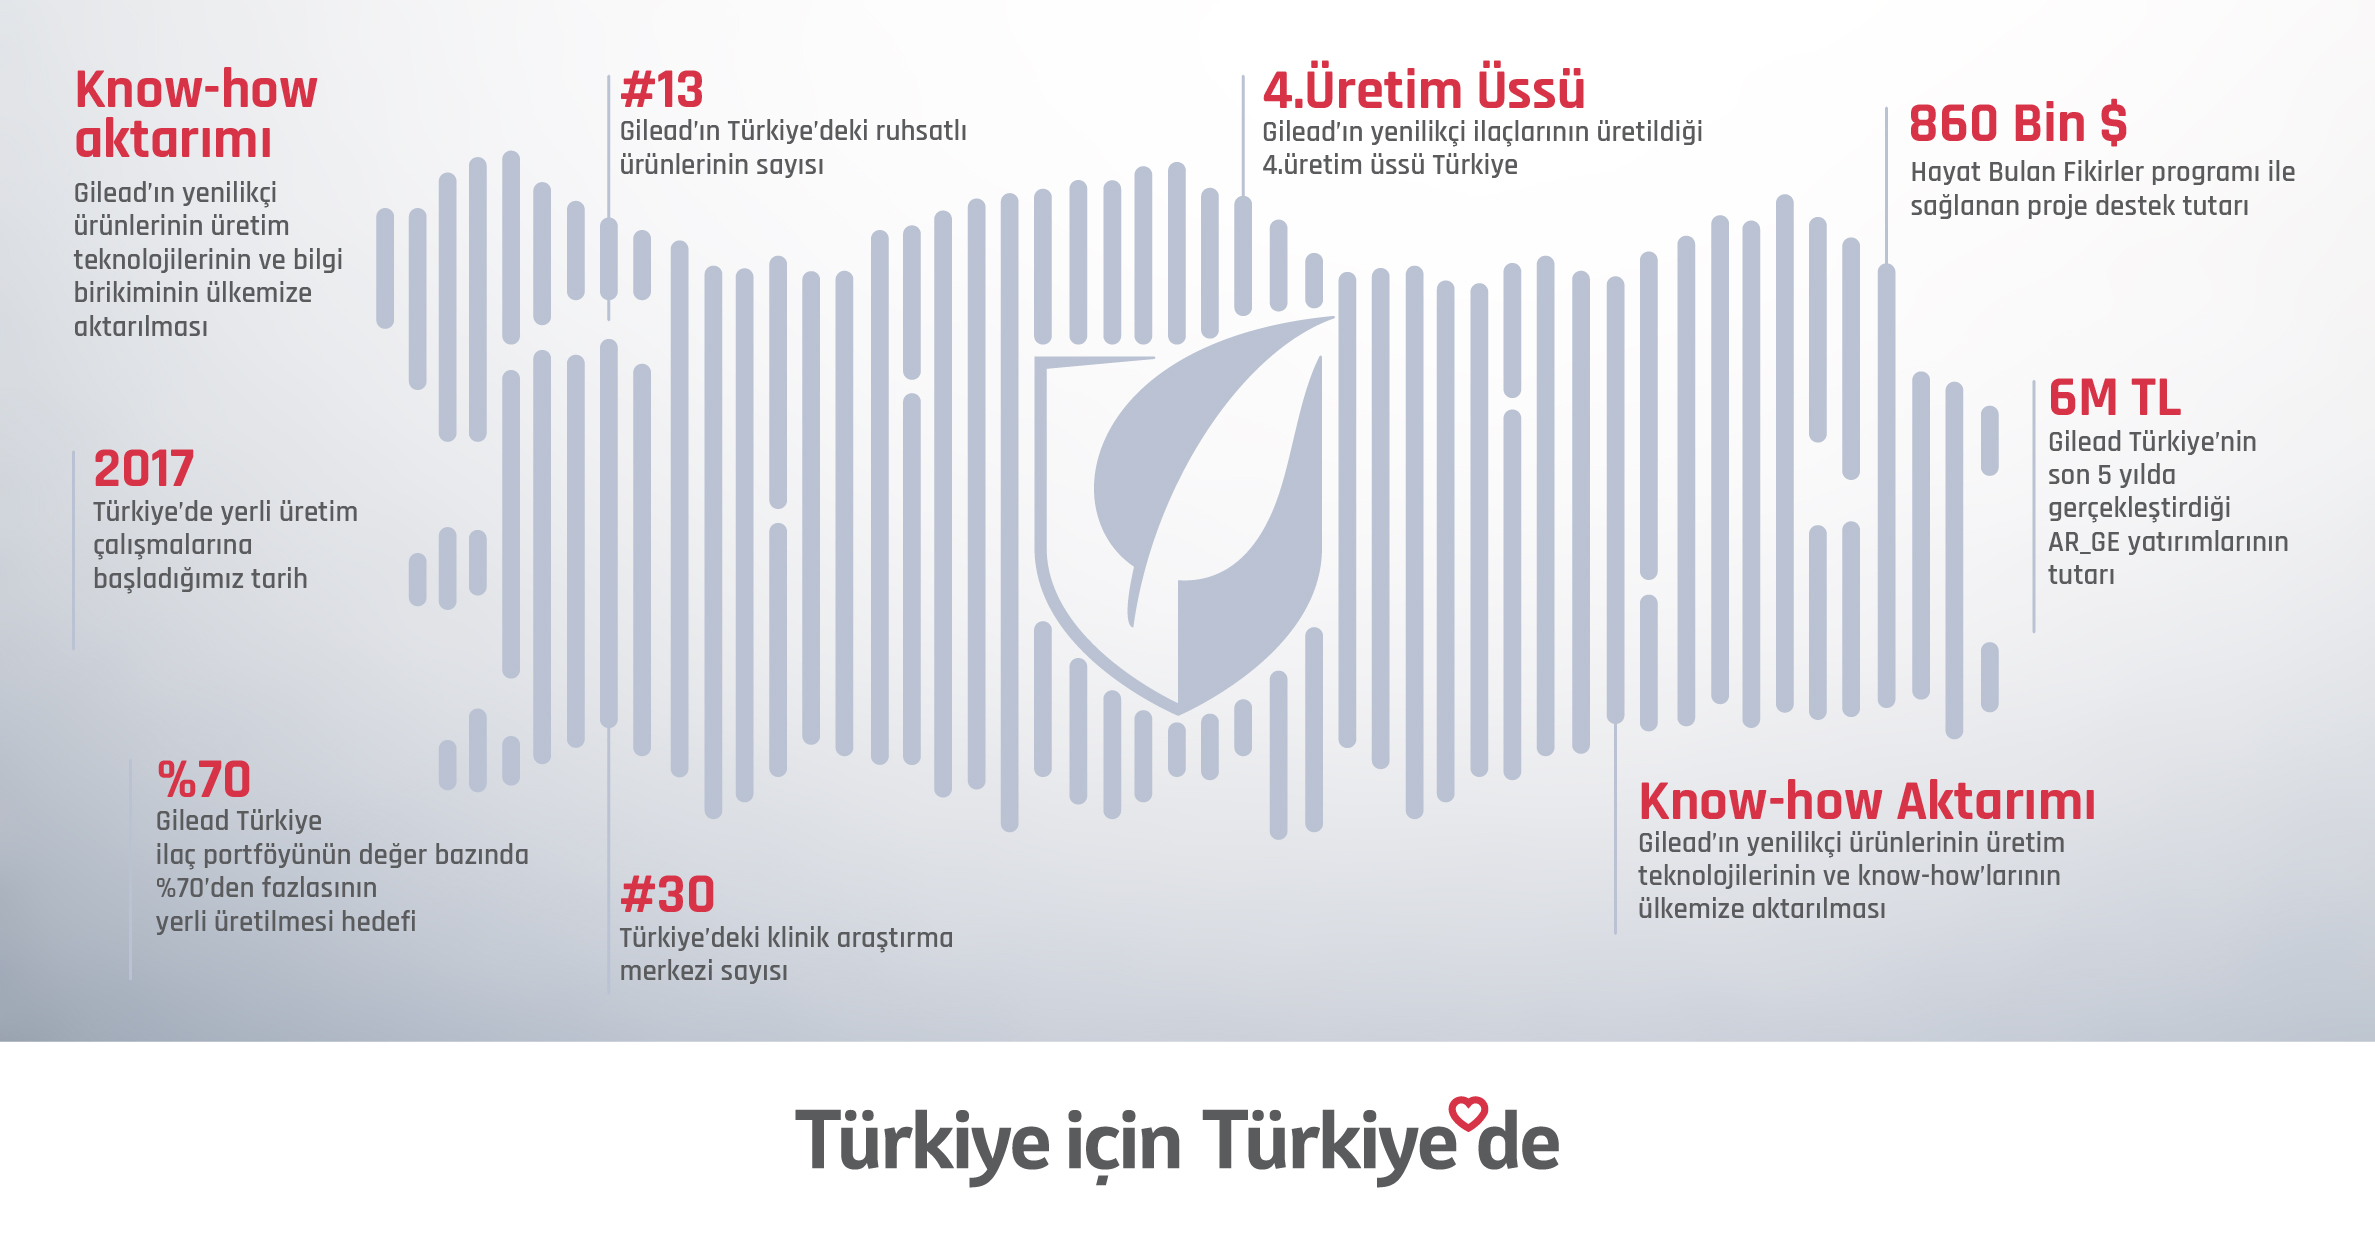 Gilead Türkiye’nin yerel etkisi hakkında bilgiler veren Türkiye haritası